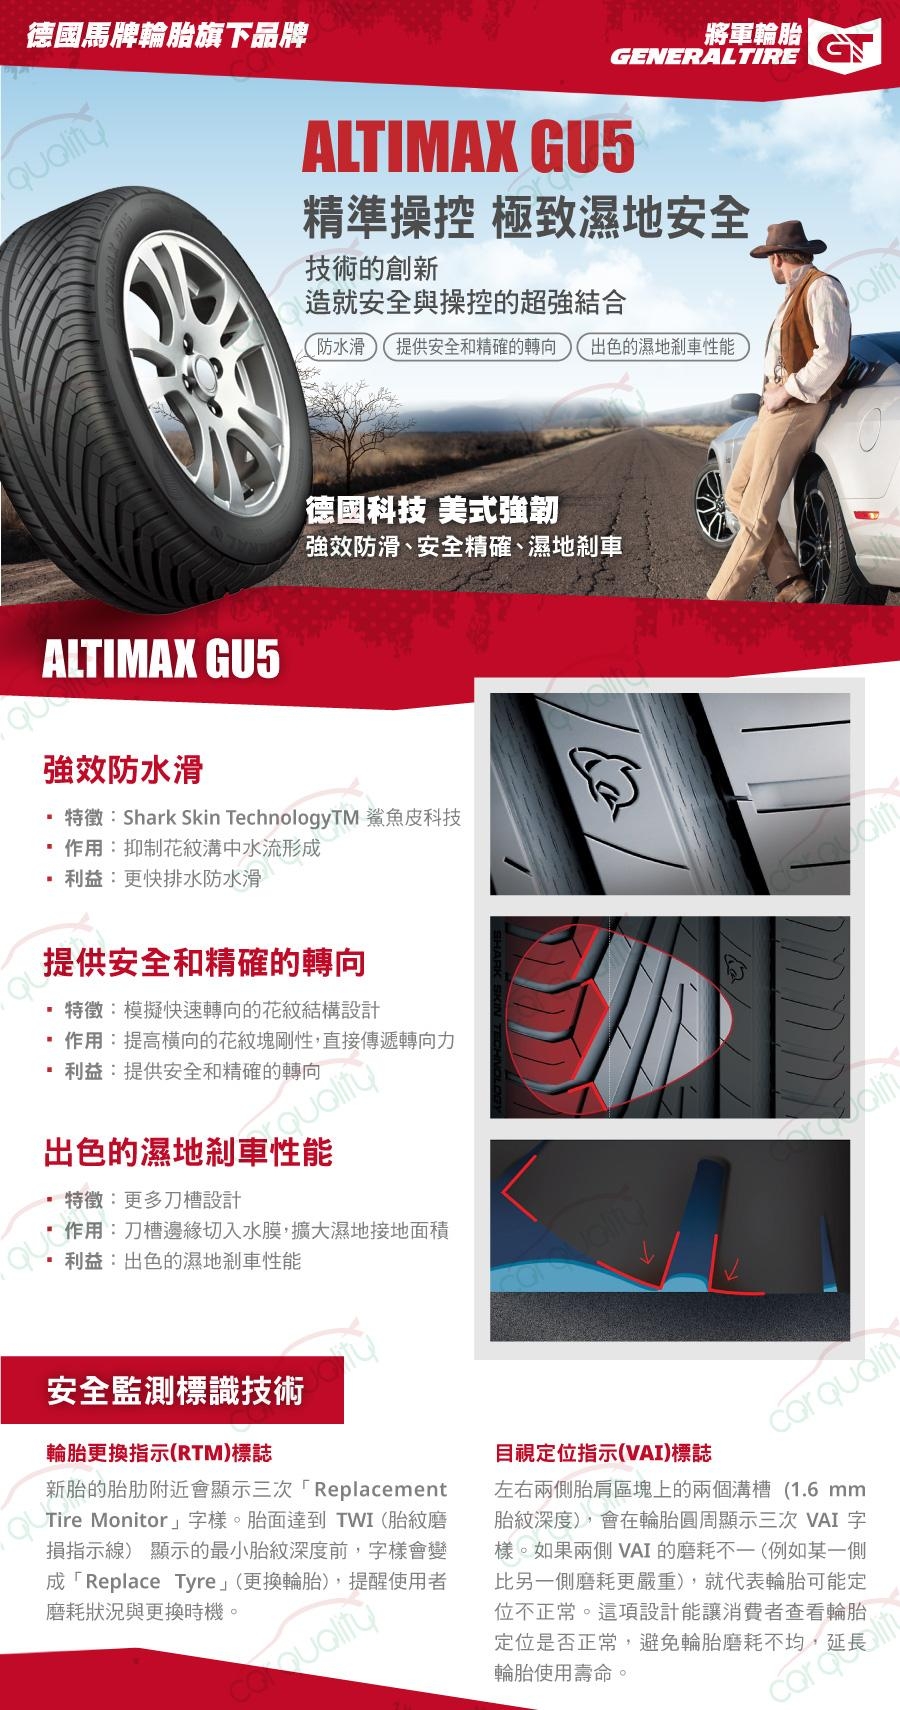 【將軍】ALTIMAX GU5_225/40/18吋濕地輪胎_送專業安裝 四入組(GU5)